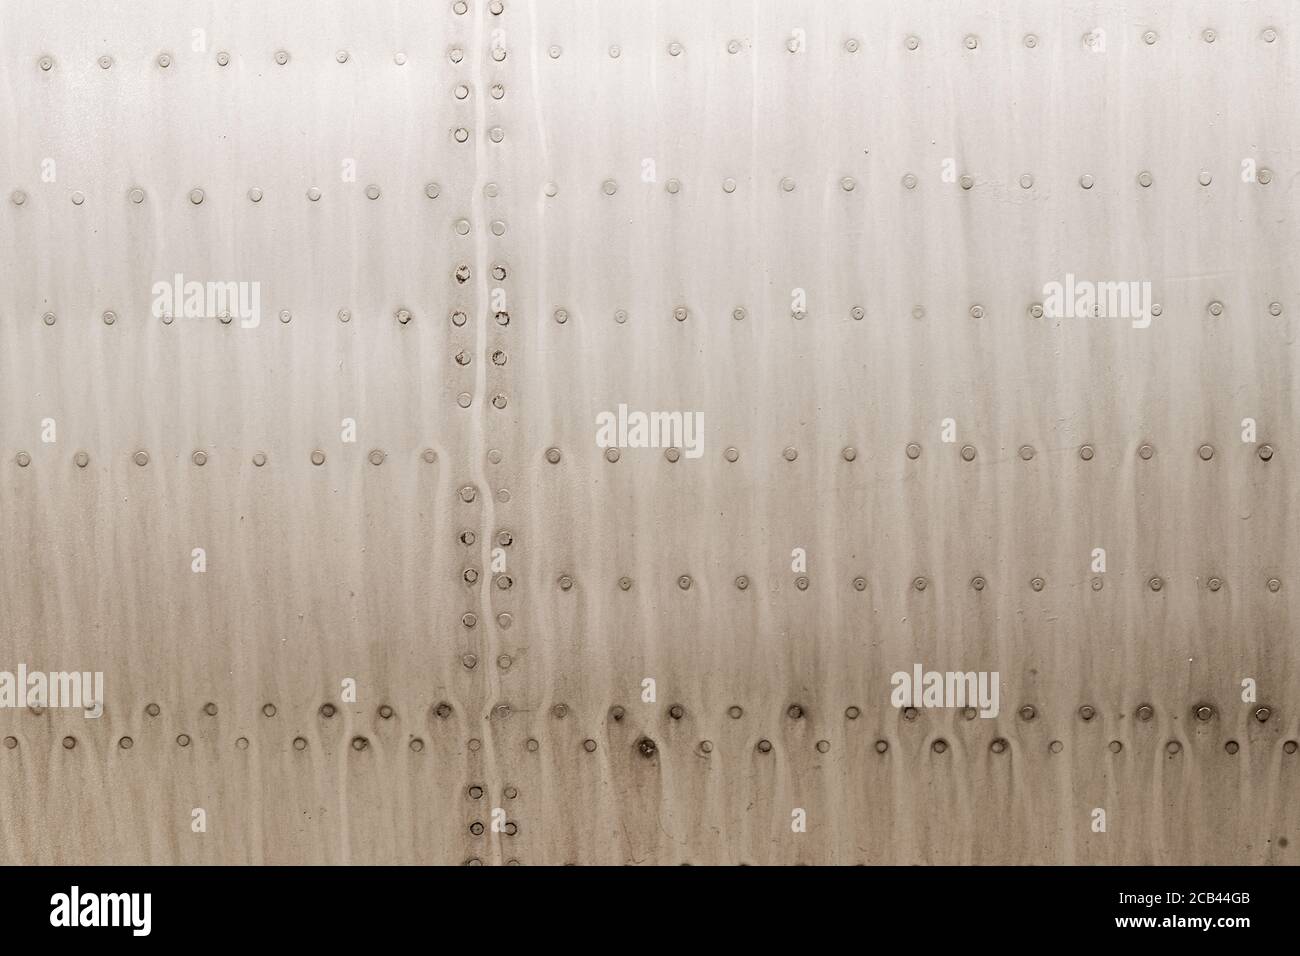 Vecchia superficie in metallo argento della fusoliera dell'aeromobile con rivetti. Foto di alta qualità Foto Stock